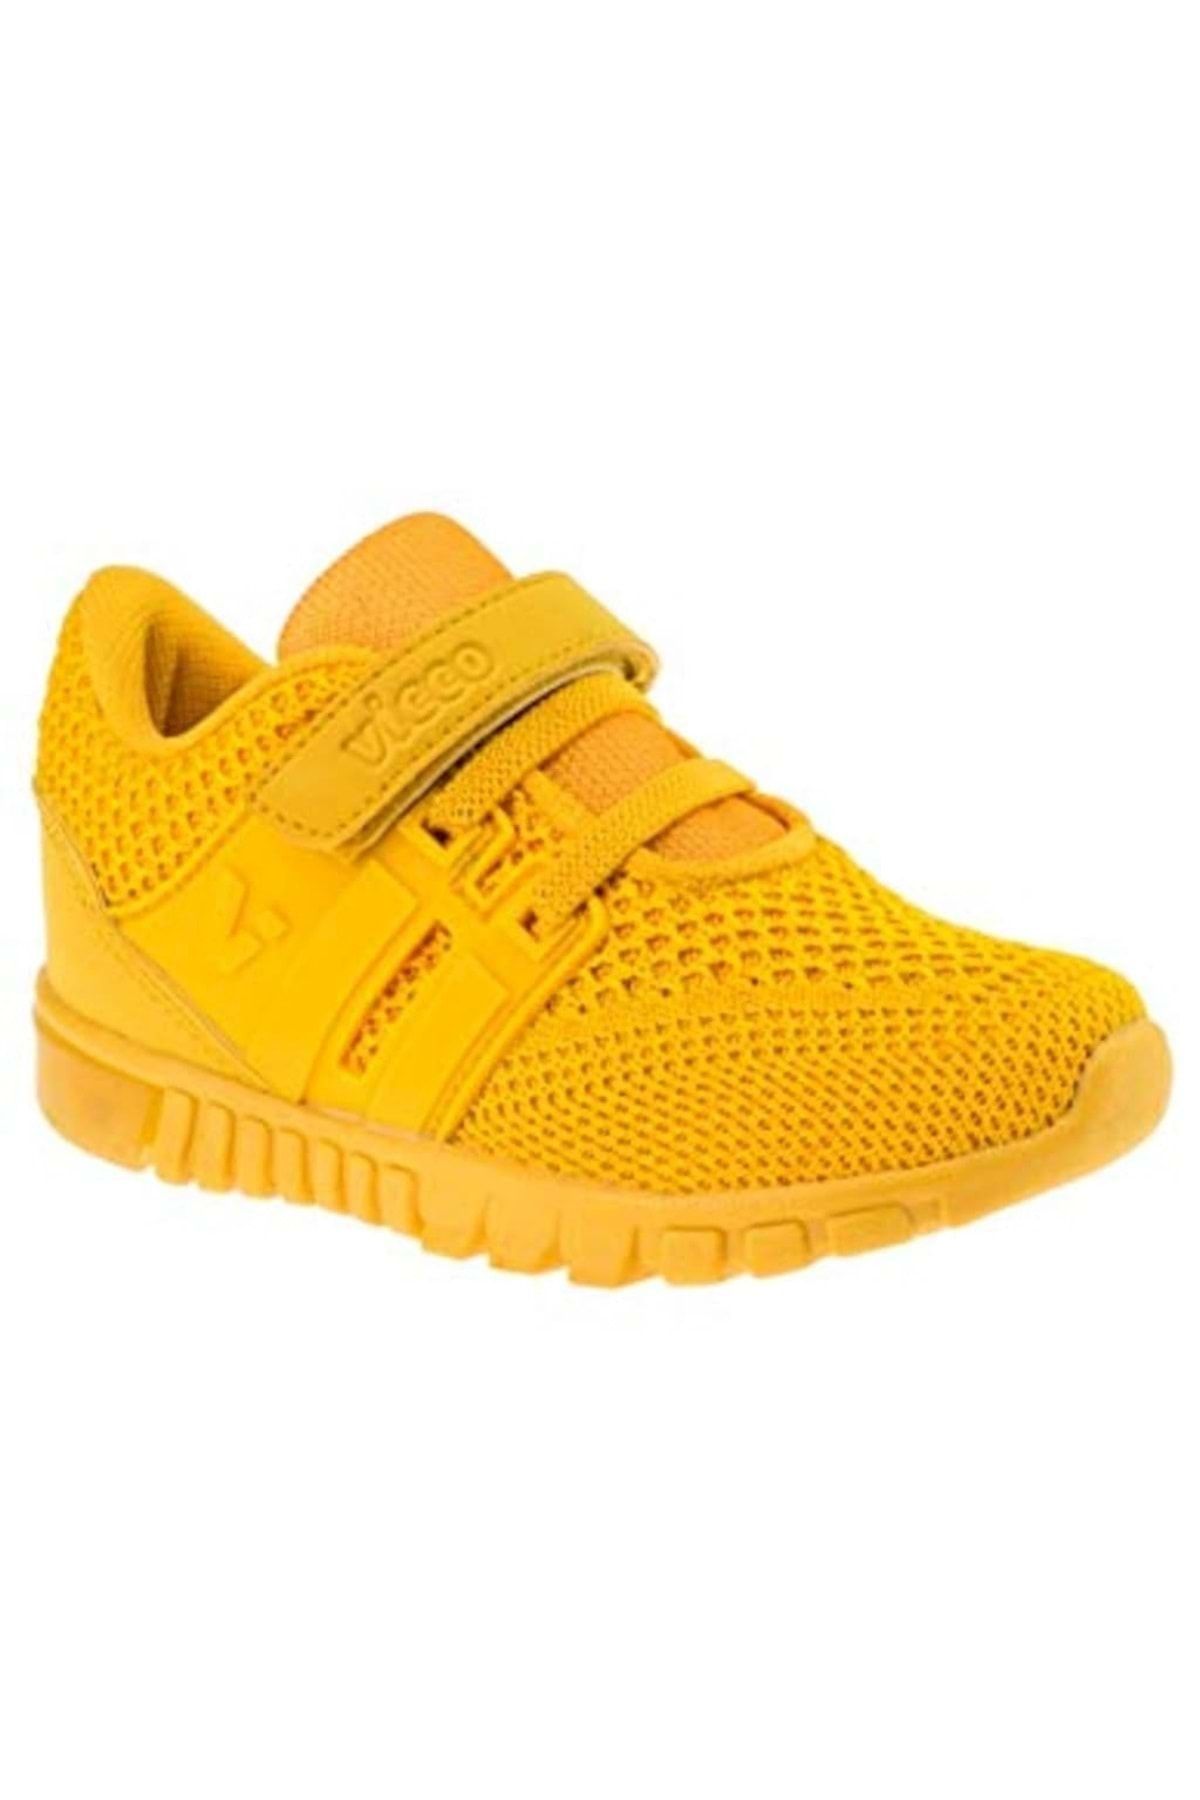 Vicco 313.18y.159 Çocuk Sarı Işıklı Kız Erkek Çocuk Spor Ayakkabı